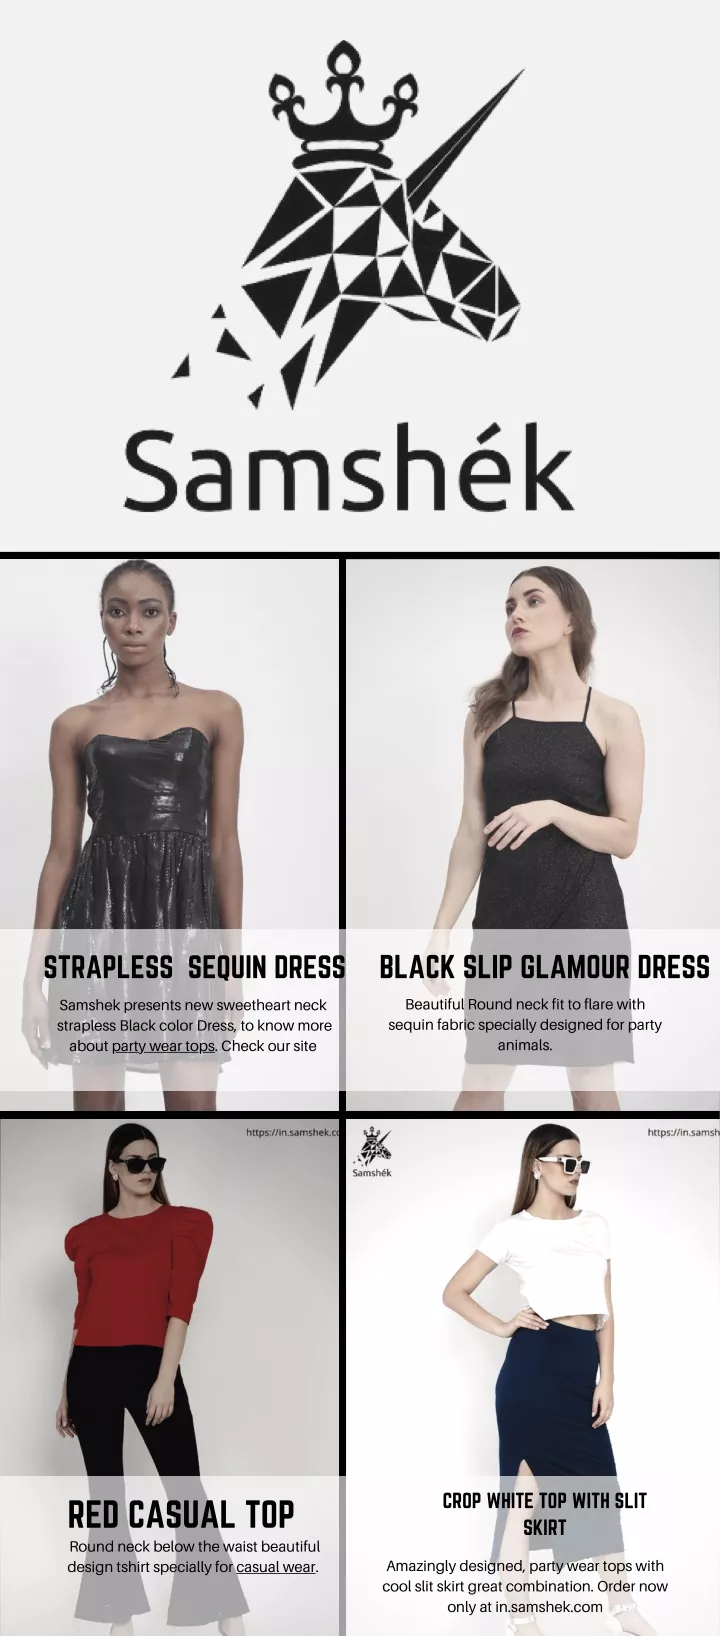 black slip glamour dress